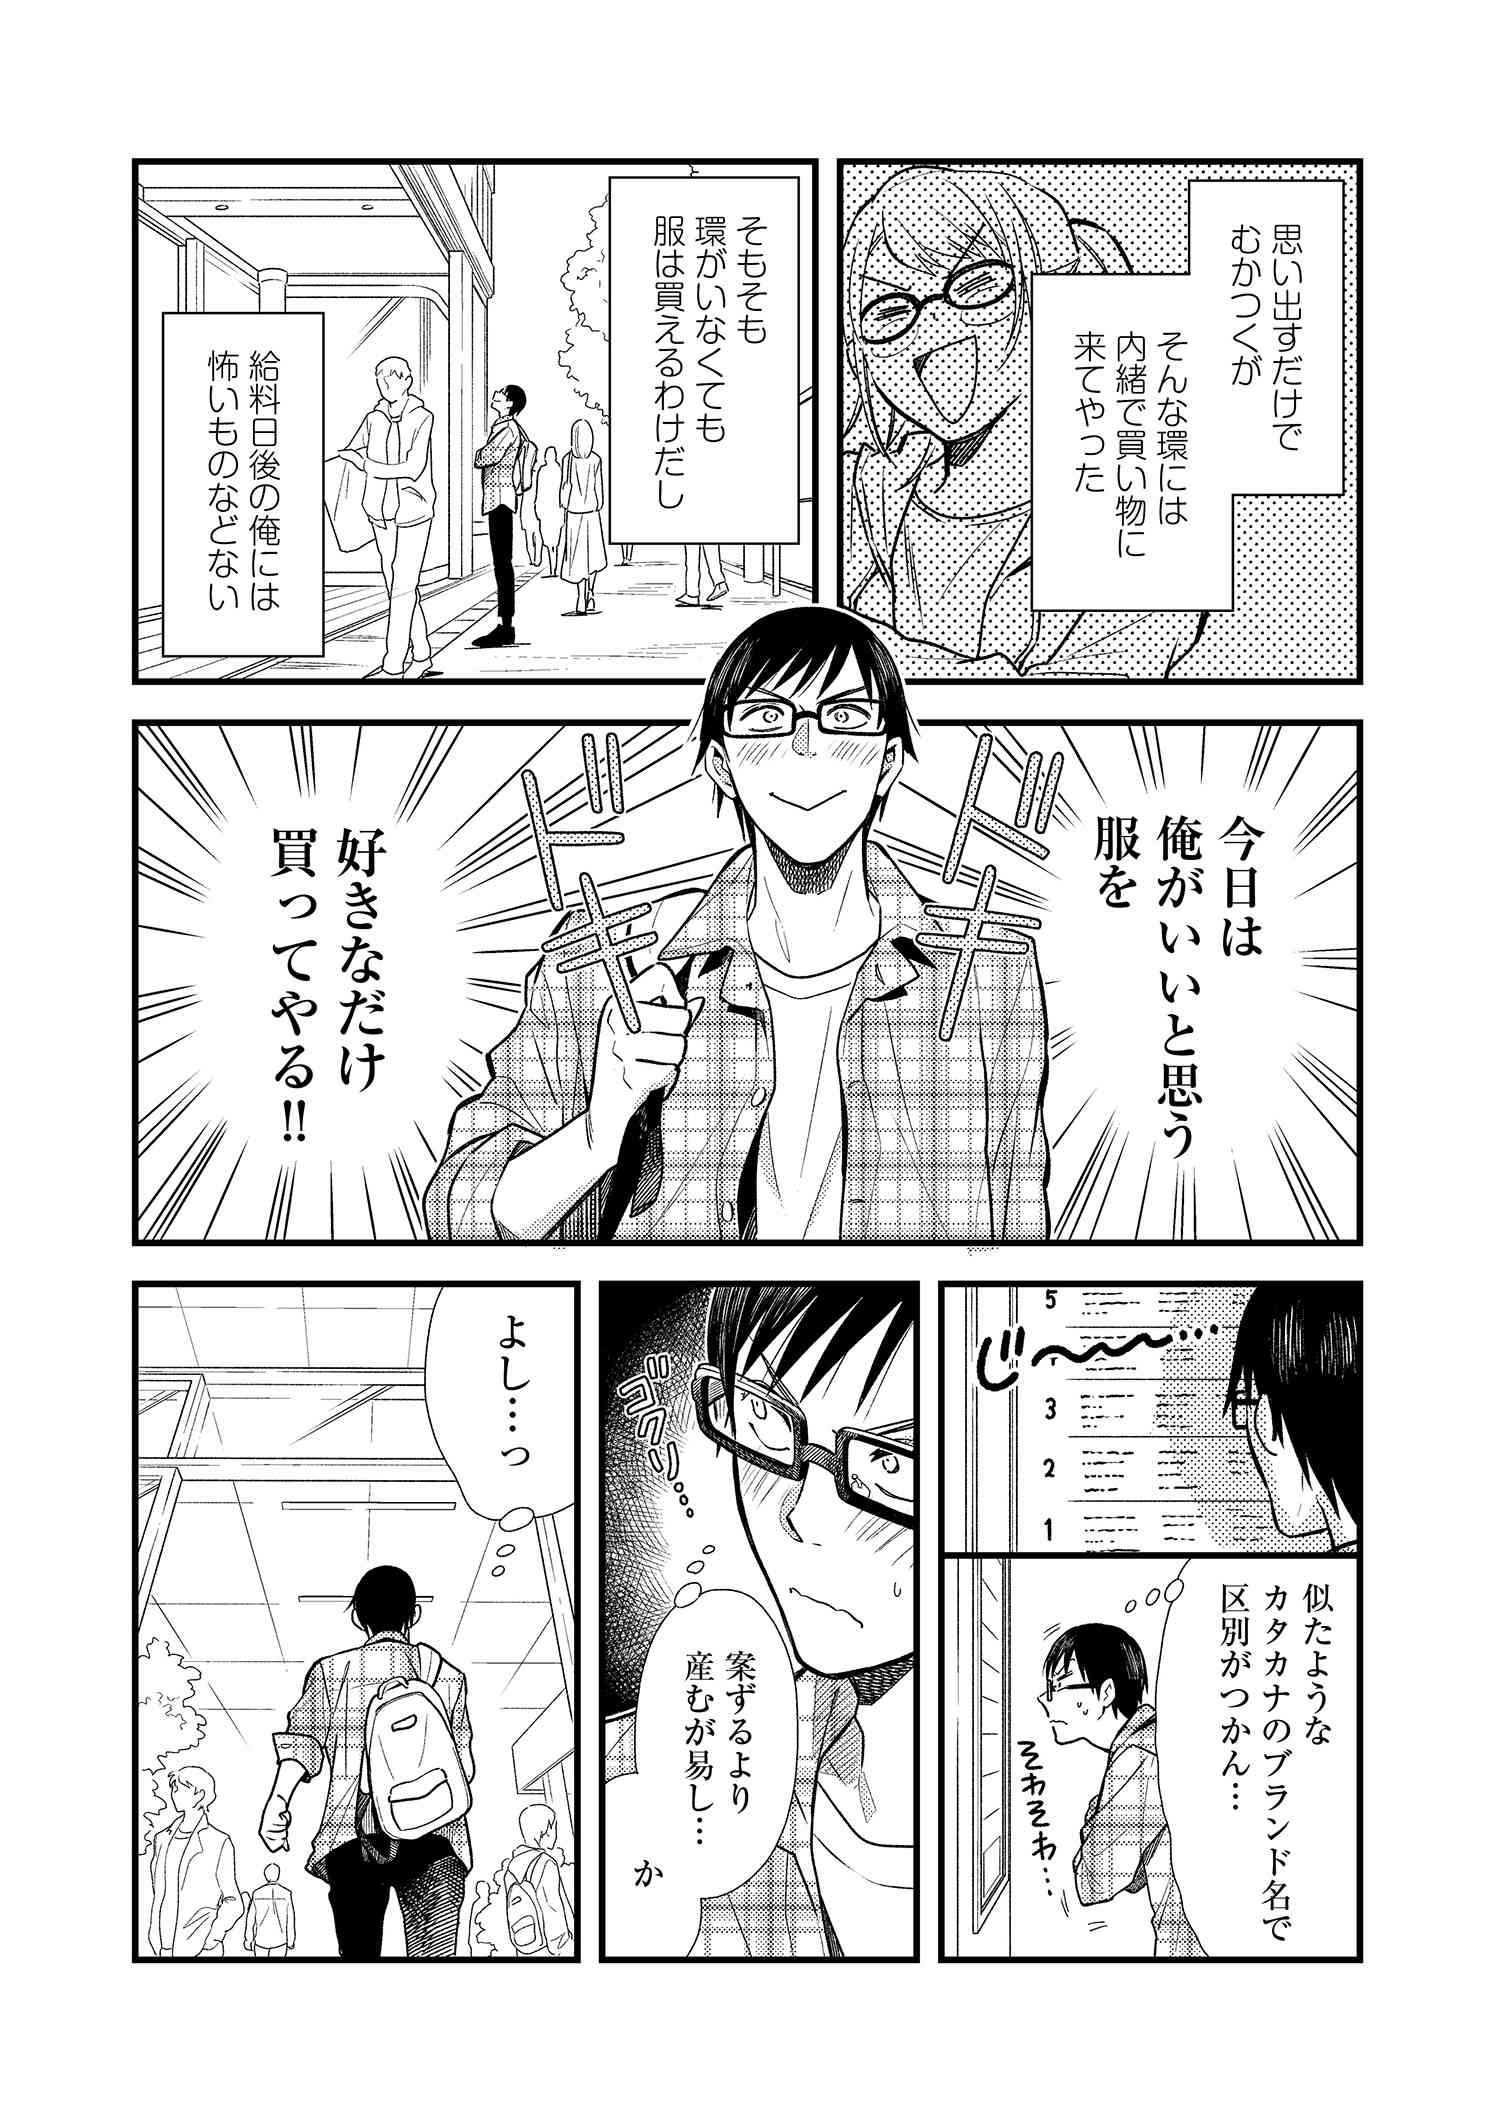 Fuku o Kiru Nara Konna Fuu ni - 服を着るならこんなふうに - Chapter 5 - Page 4